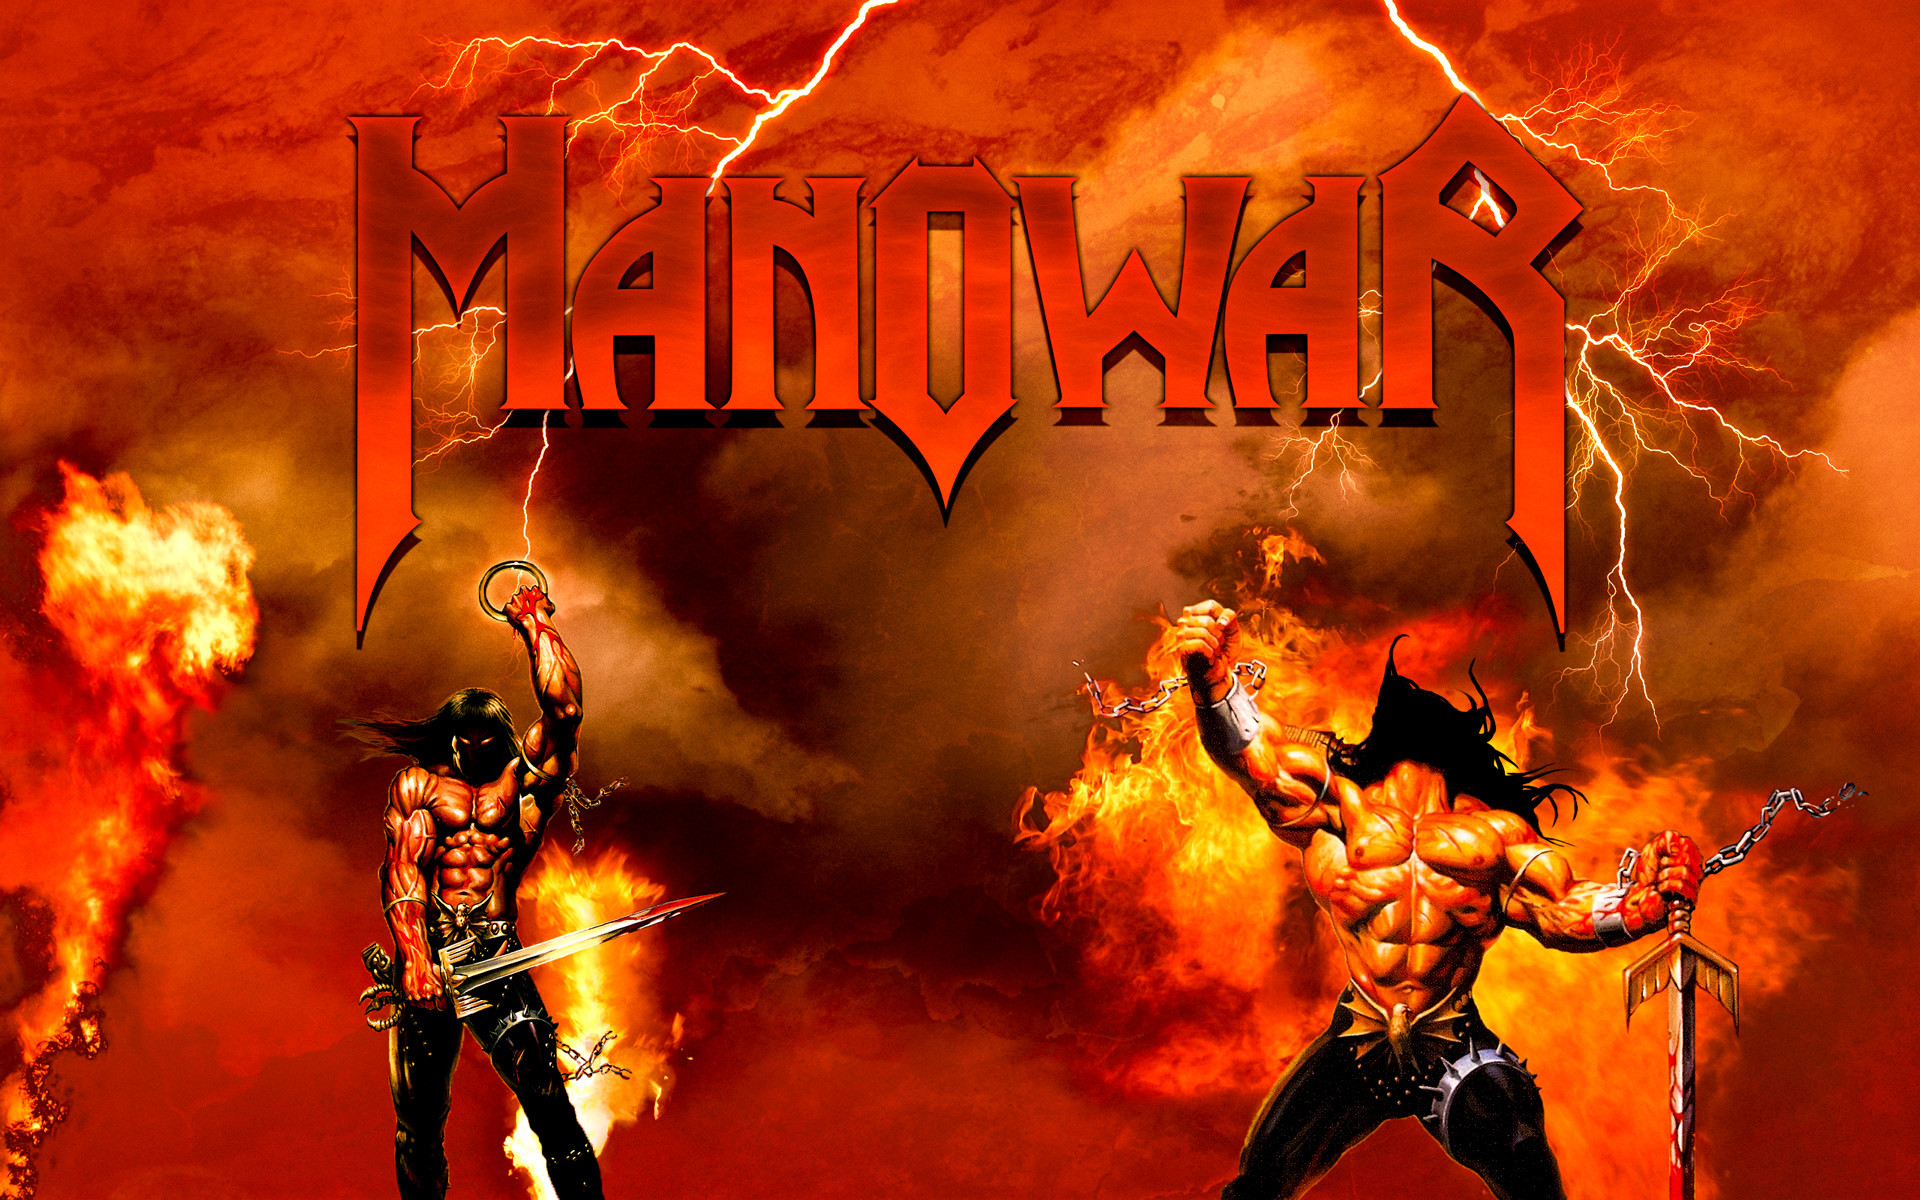 Manowar united warriors. Обложки дисков Manowar. Группа Manowar. Группа мановар постеры. Группа Manowar обложки.